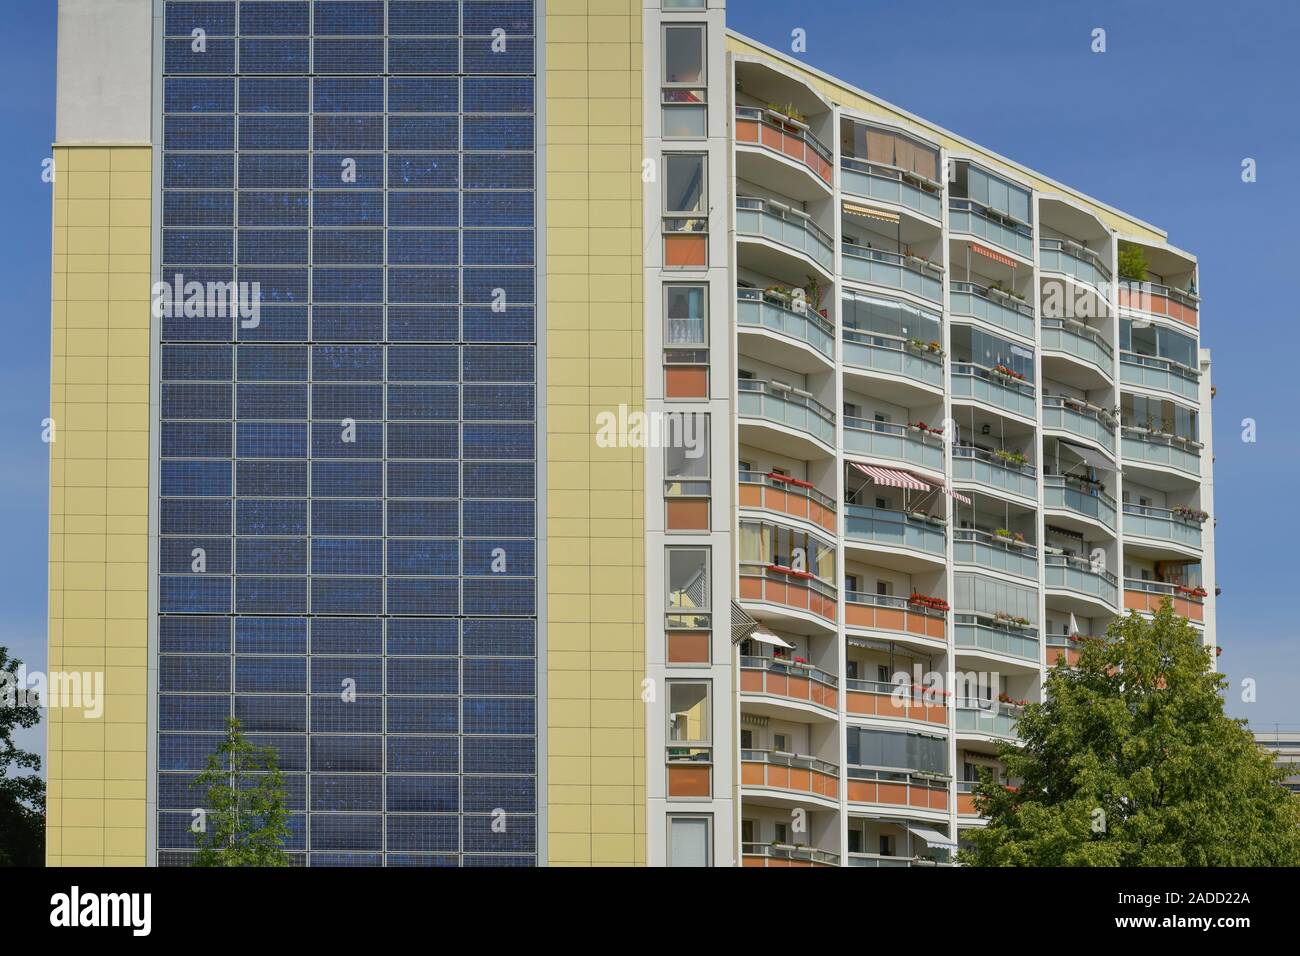 Fotovoltaik-Anlage, Hochhaus, Ludwig-Renn-Straße 35, Berlín Marzahn, Deutschland Foto de stock